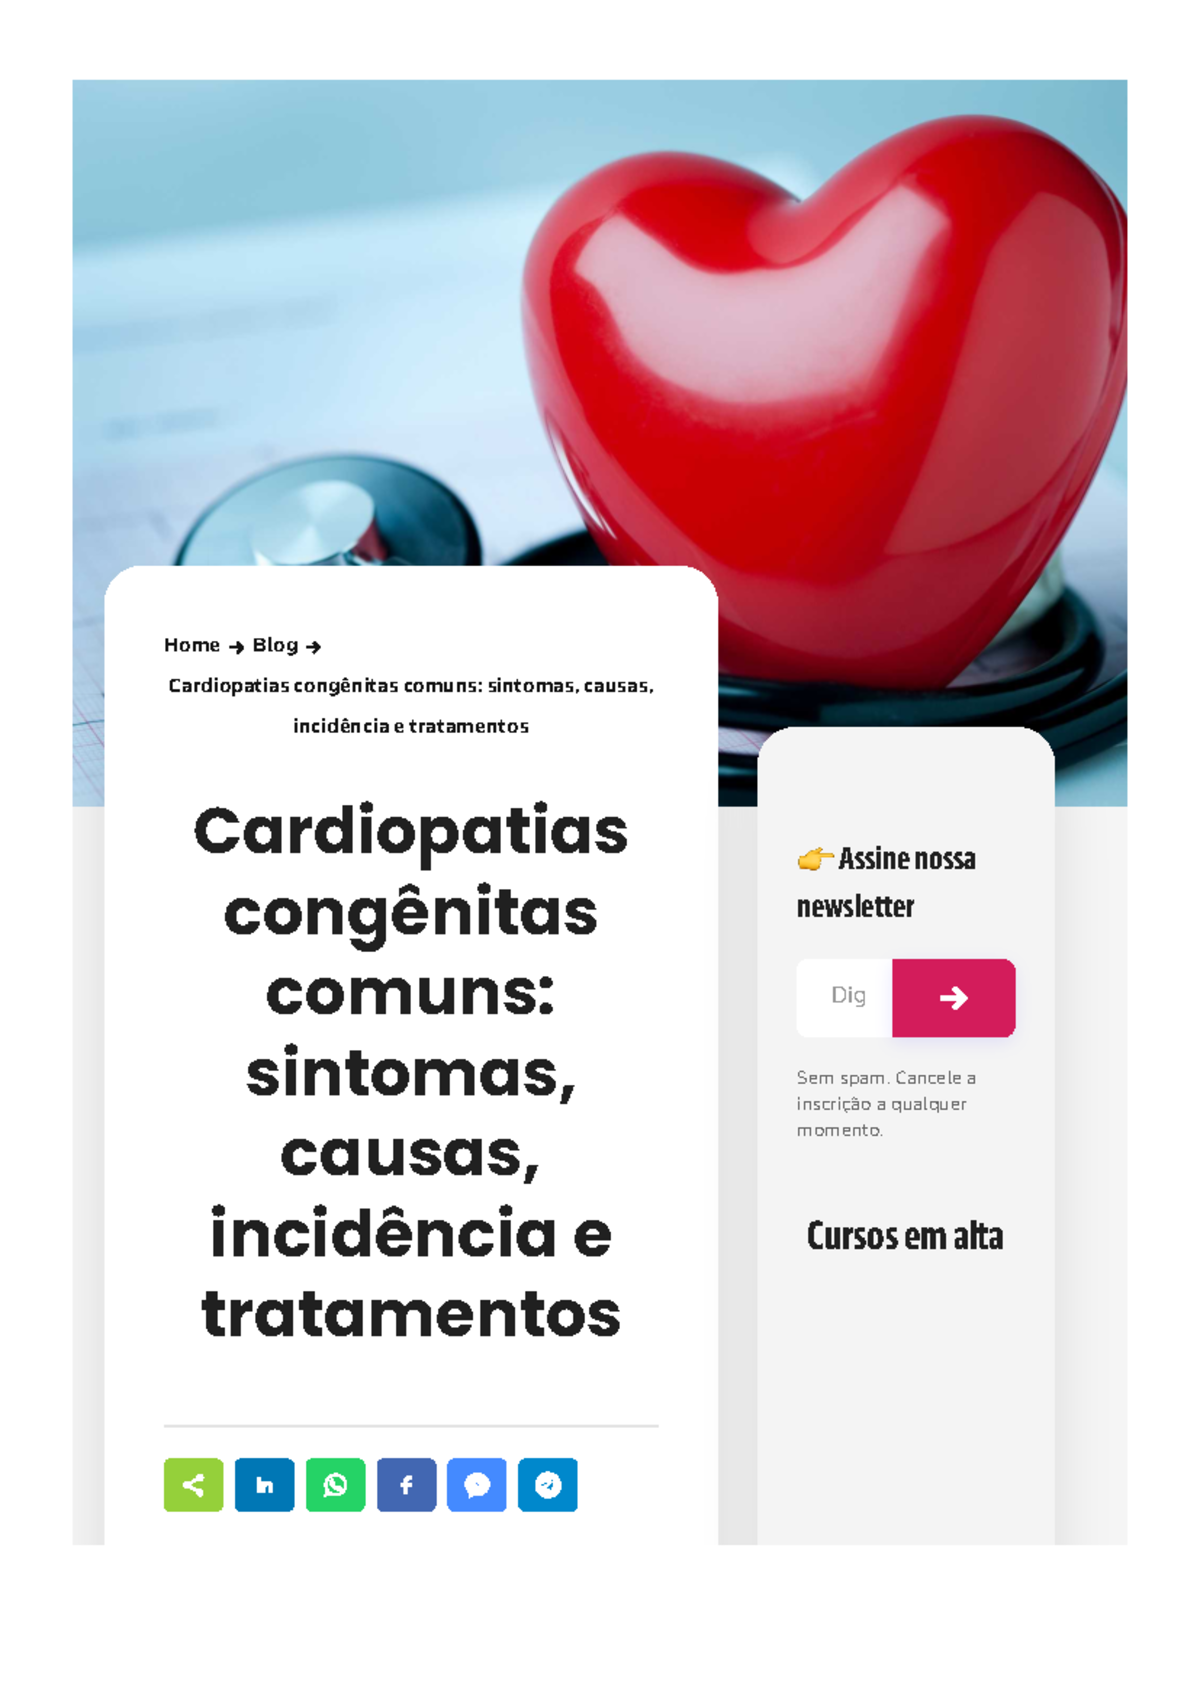 Cardiopatias congênitas comuns sintomas causas incidência e tratamentos Home Blog Studocu